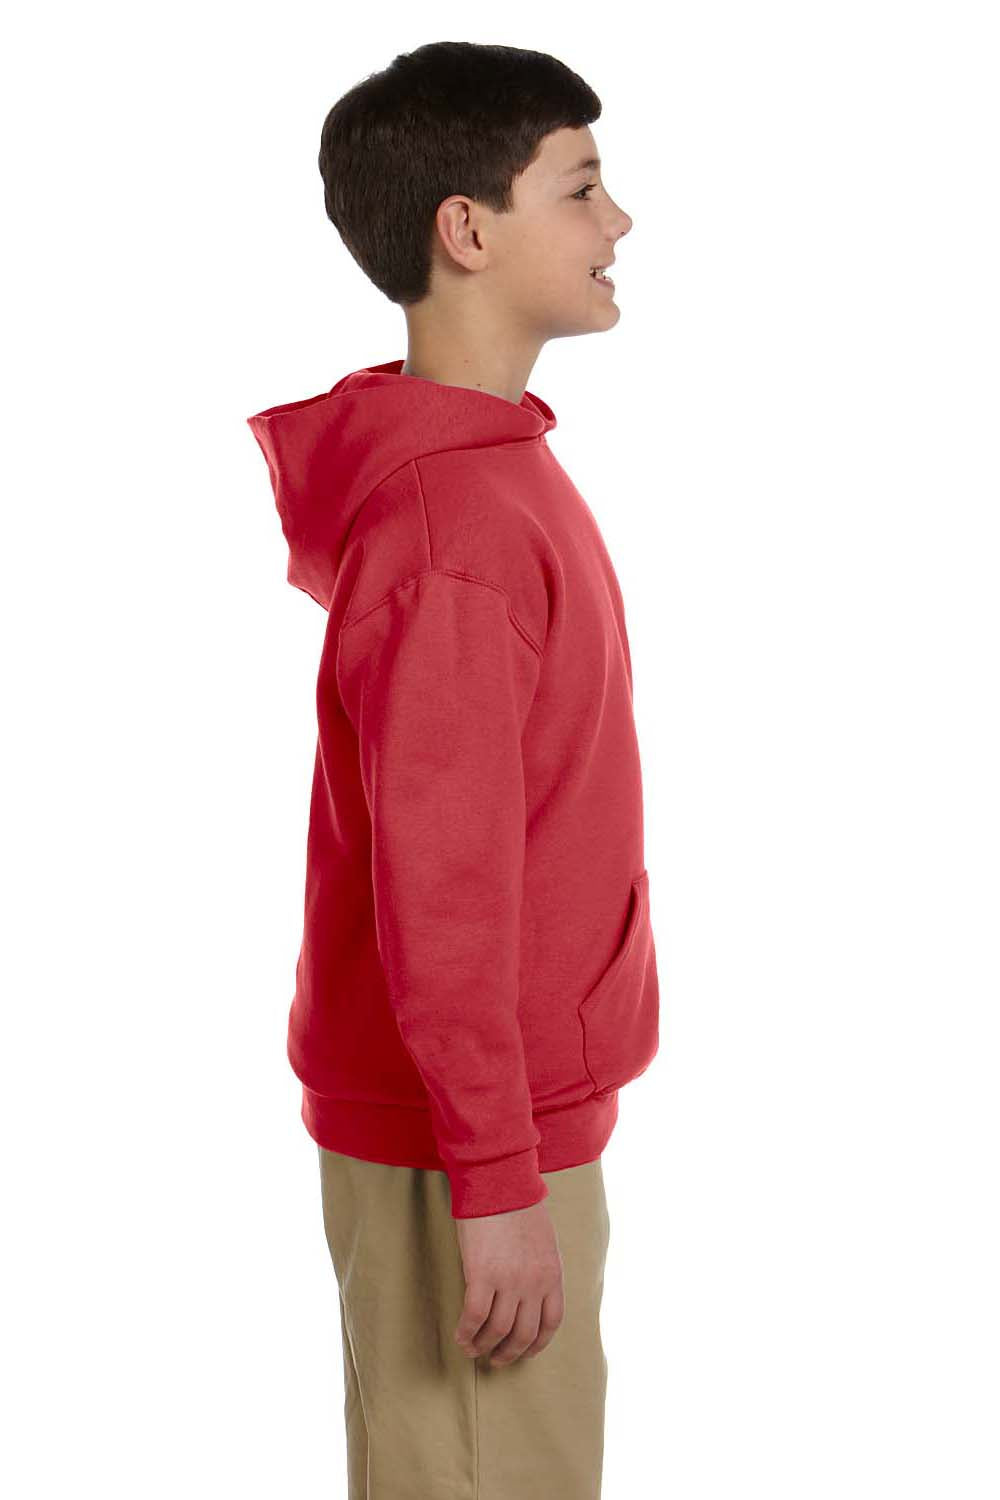 Jerzees 996Y Youth NuBlend Fleece Hooded Sweatshirt Hoodie Red Side